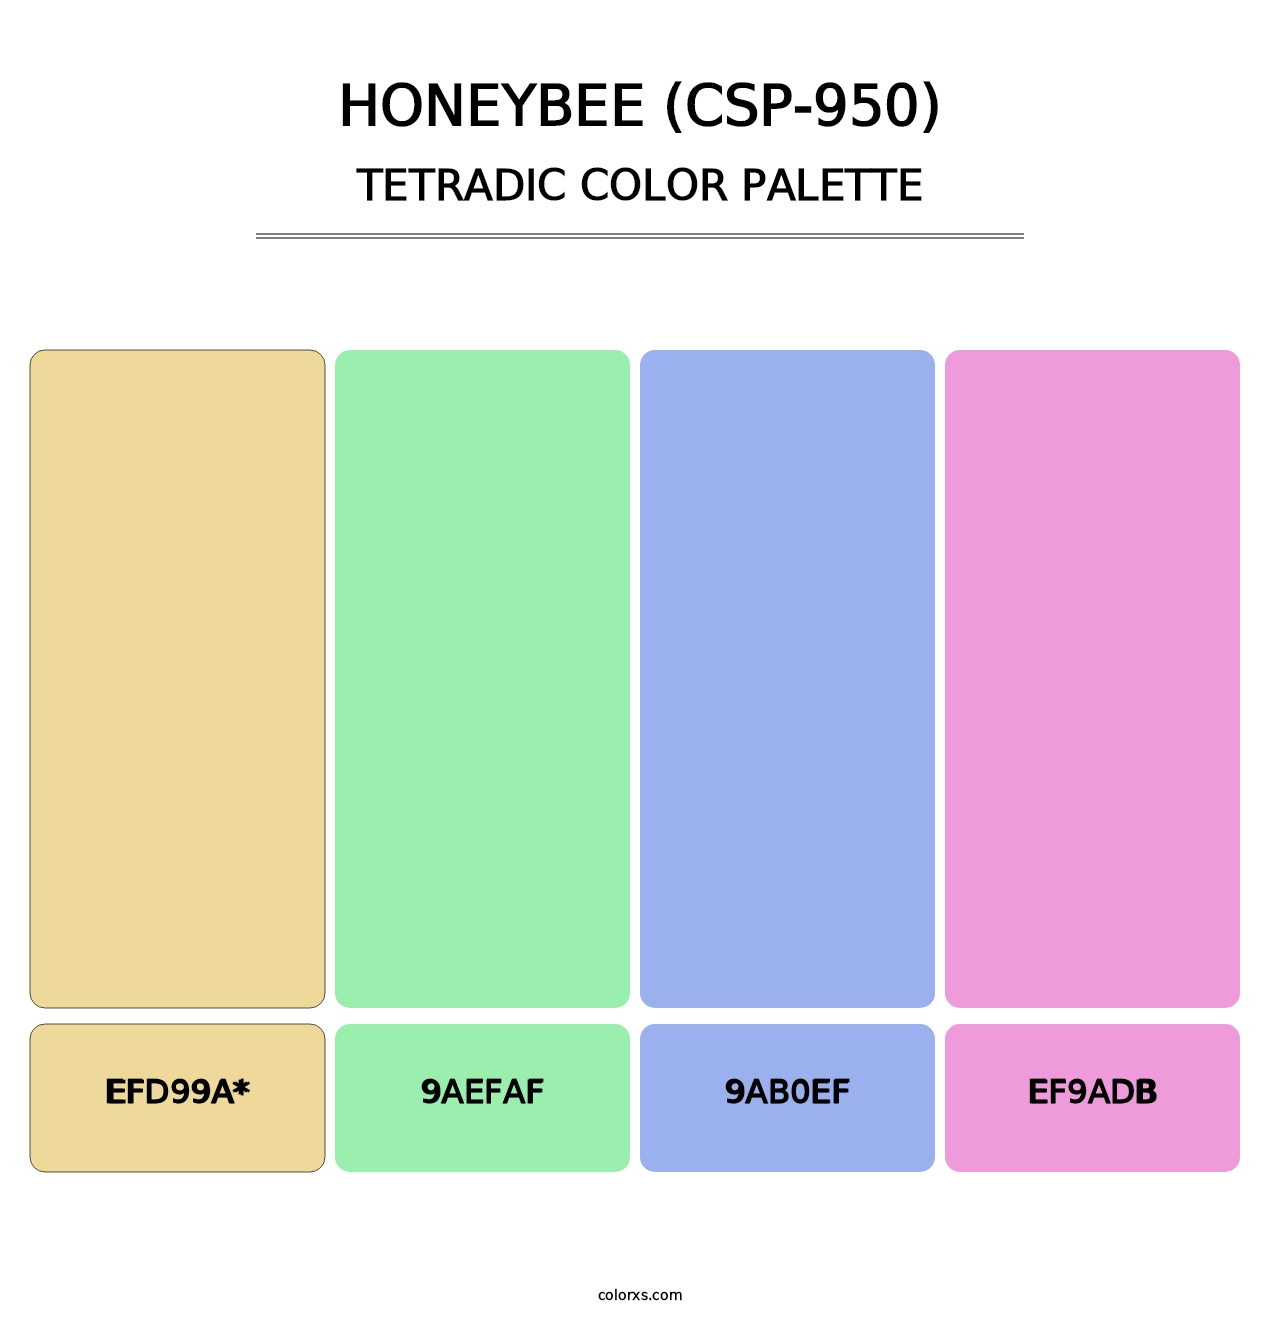 Honeybee (CSP-950) - Tetradic Color Palette